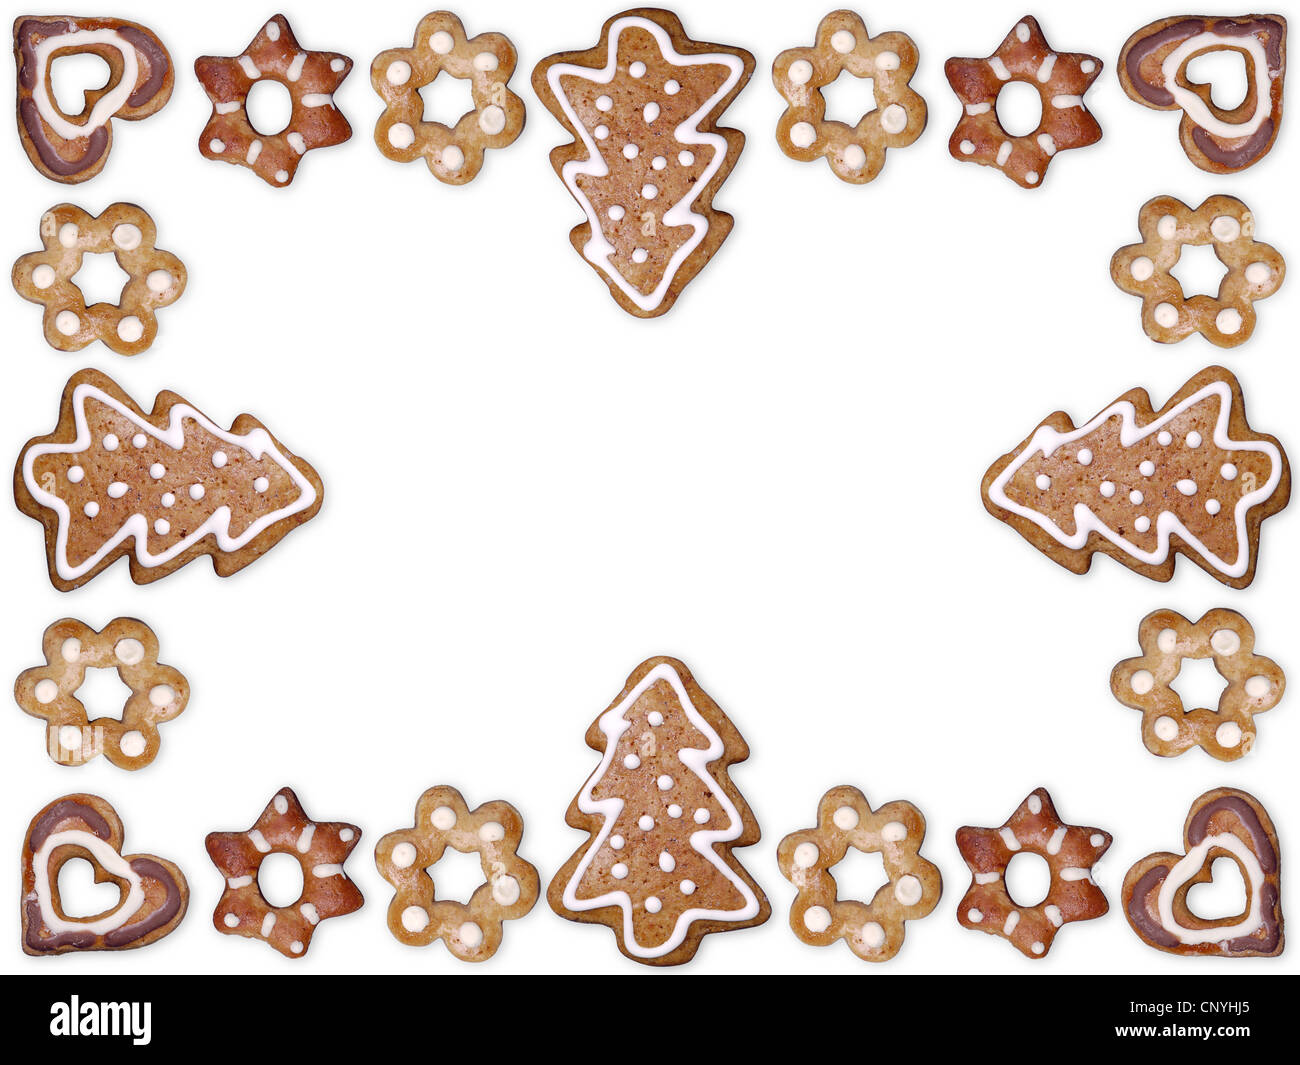 Dekorative saisonale Form Lebkuchen angeordnet in Rahmen mit weißem Hintergrund Stockfoto